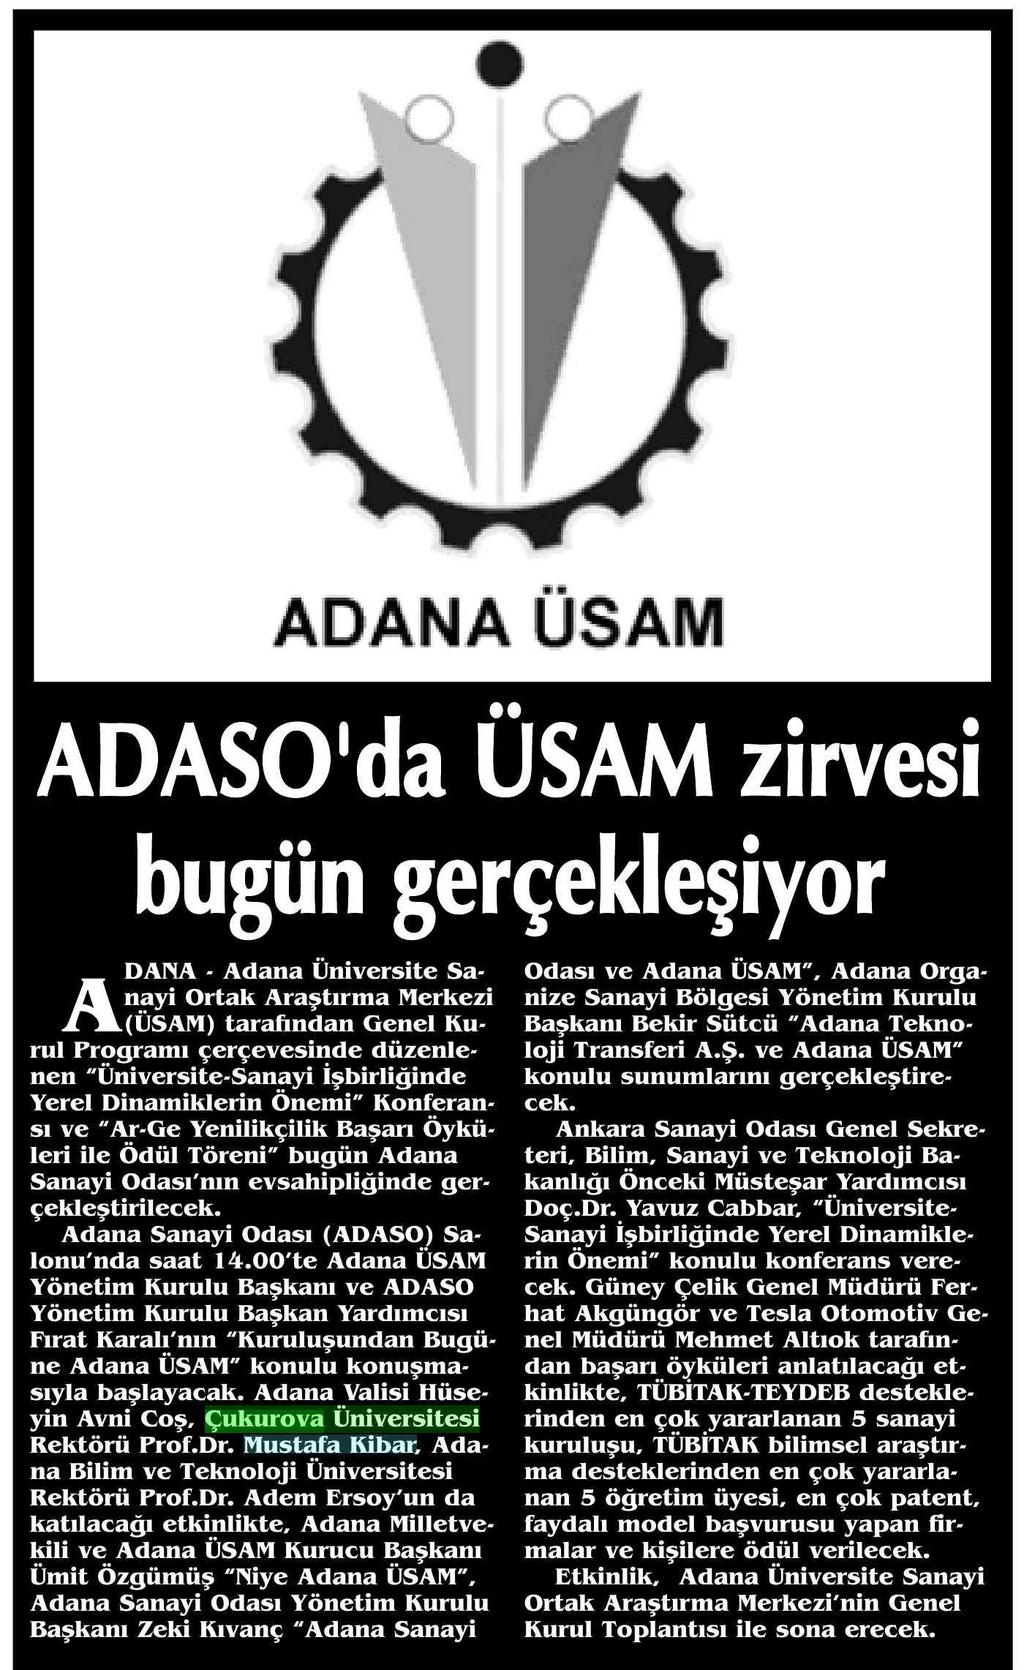 ADASO'DA ÜSAM ZIRVESI BUGÜN GERÇEKLESIYOR Yayın Adı : Adana